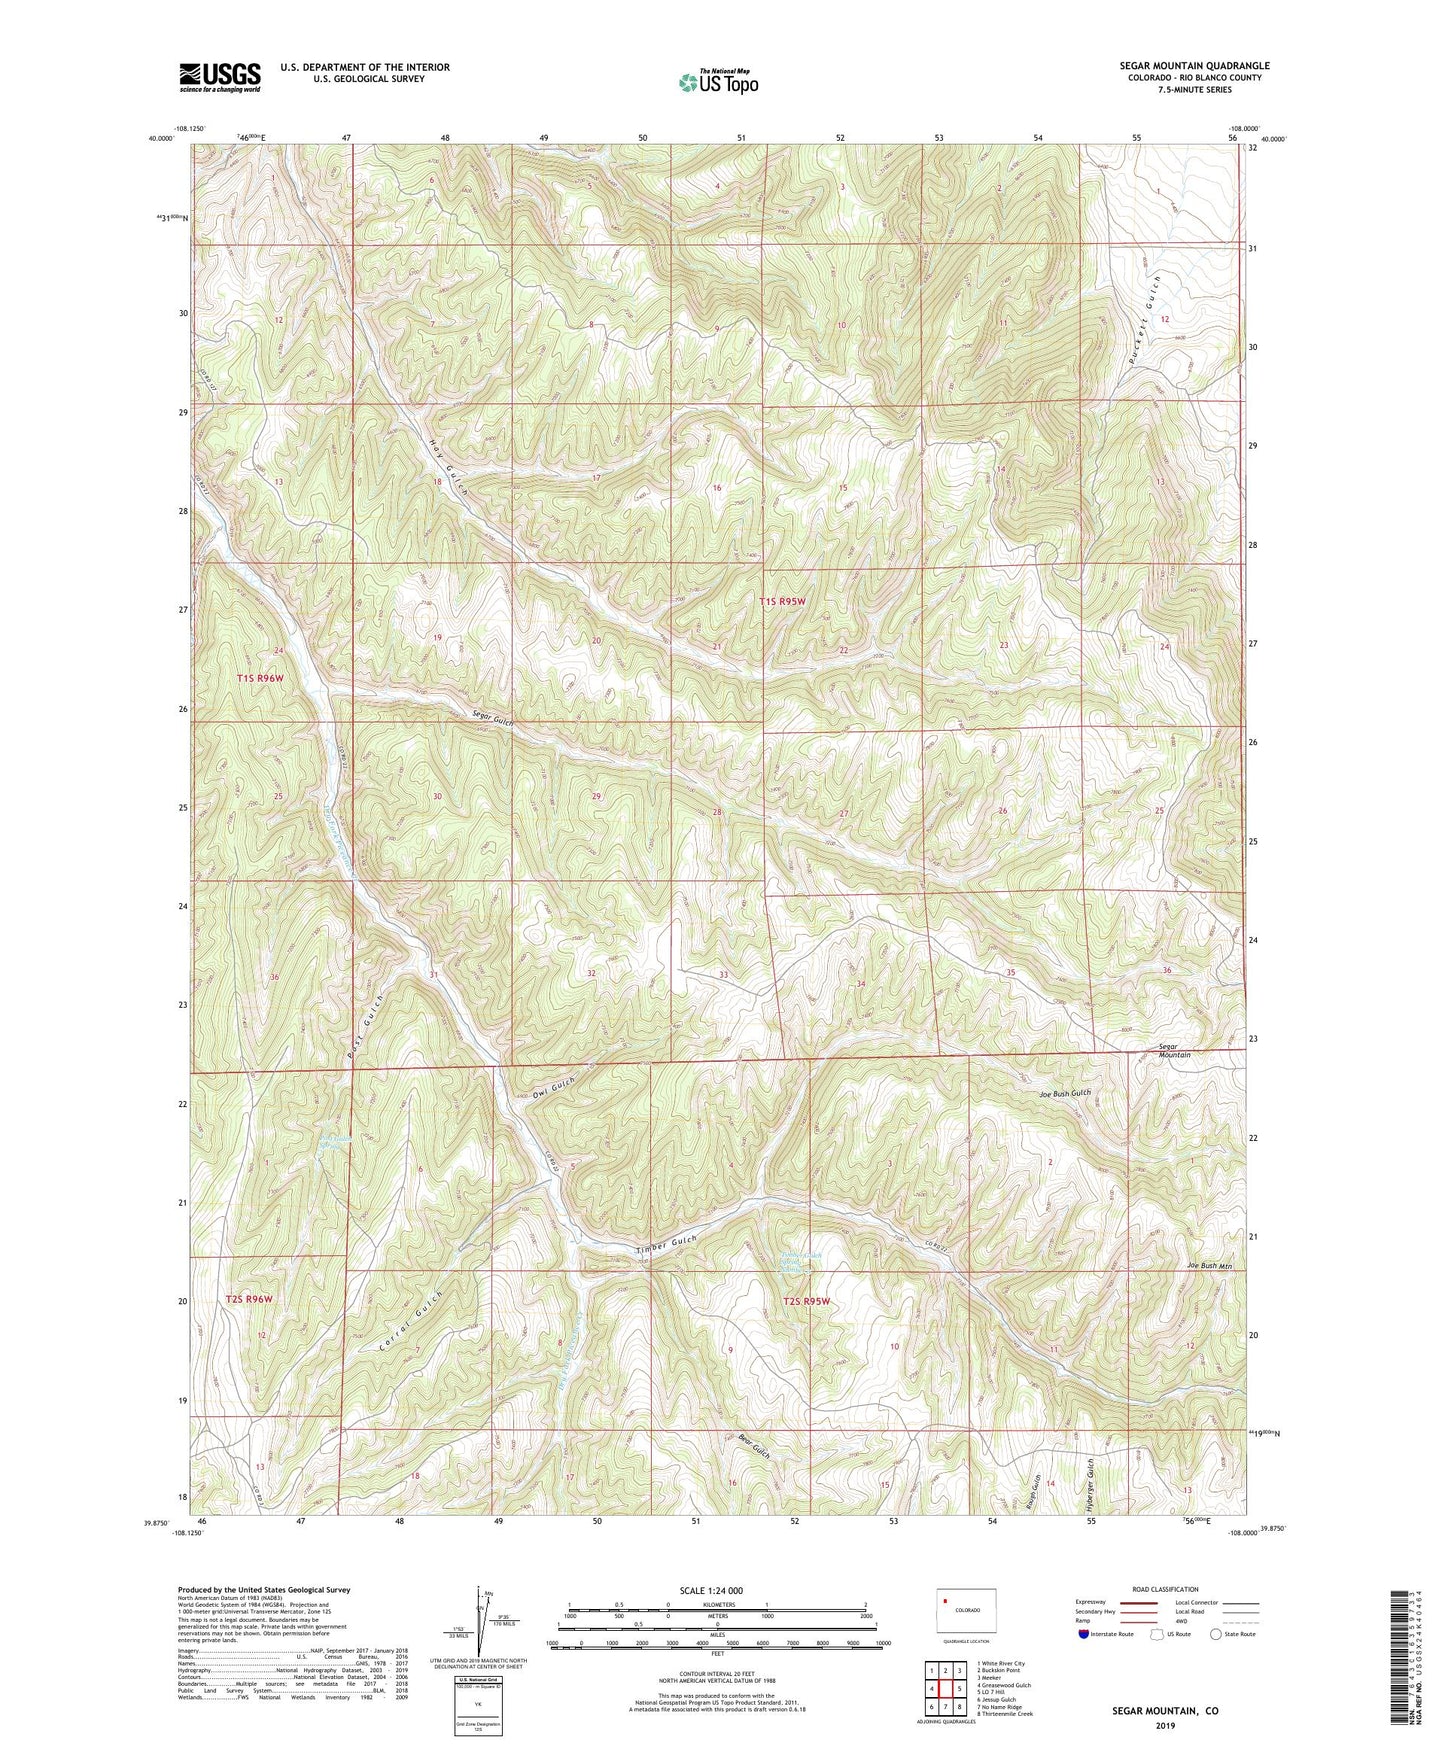 Segar Mountain Colorado US Topo Map Image